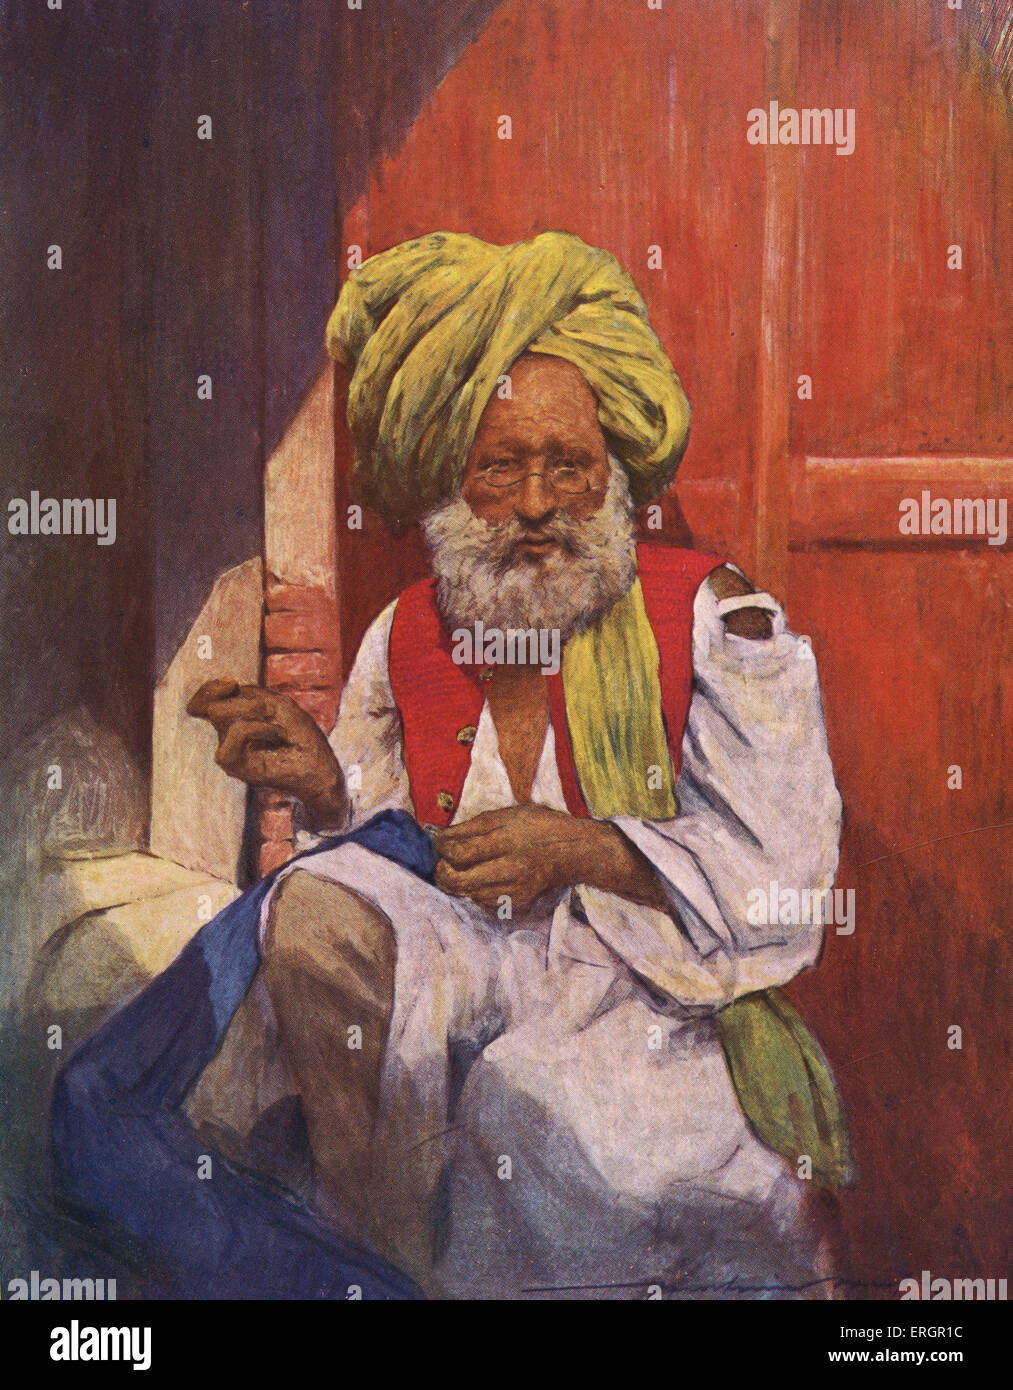 Un Indien tailleur, portant un turban et longue veste de couleur vive, siège de travailler avec une aiguille et du fil. Banque D'Images